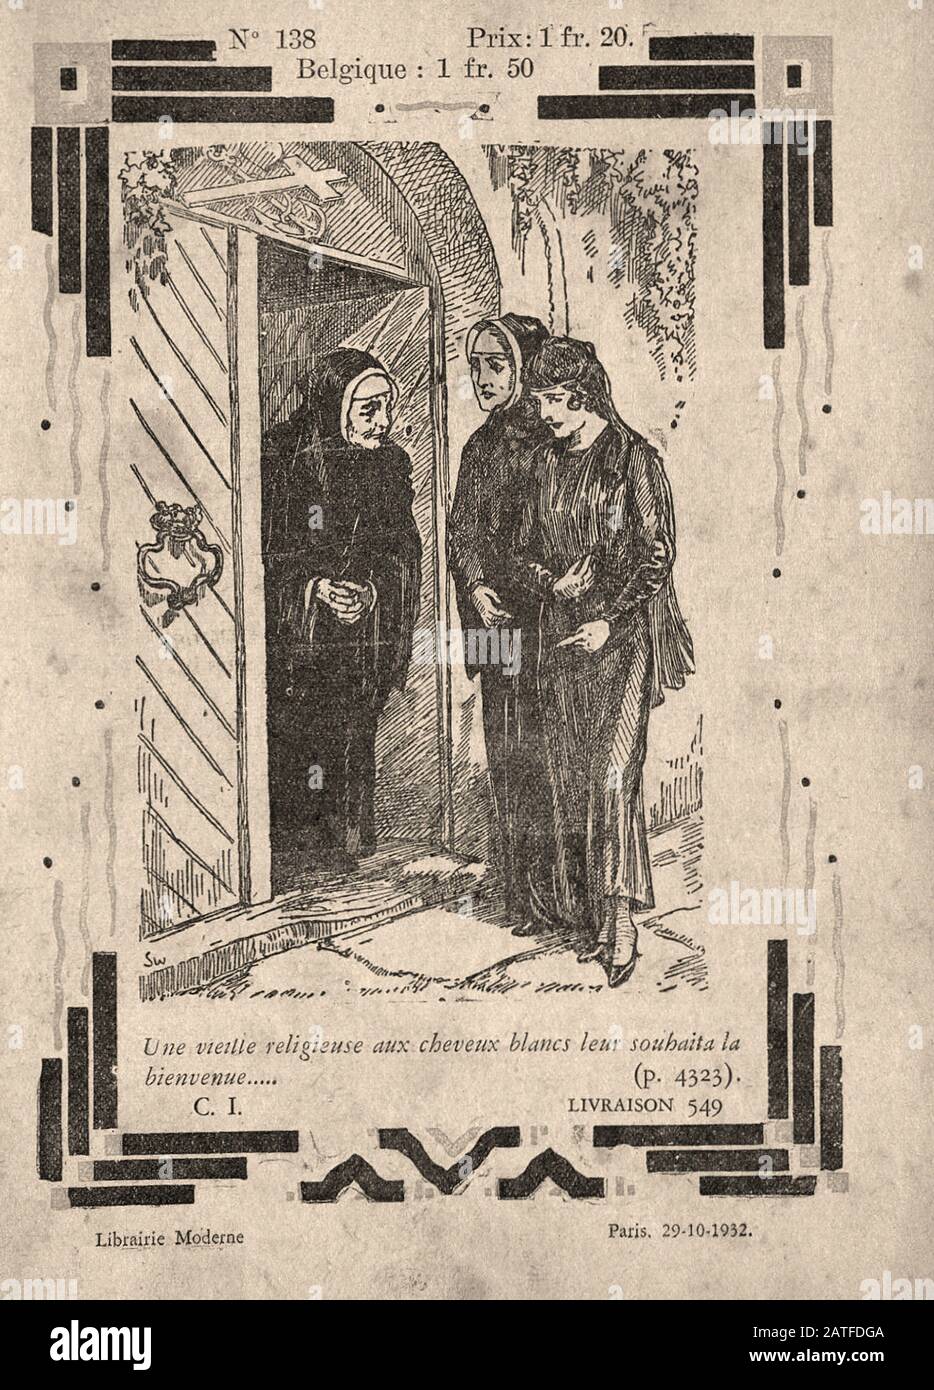 L'affare Dreyfus 1894-1906 - Le Calvaire d'onu innocenti, no. 138 - Francese anonimo libro illustrato Foto Stock